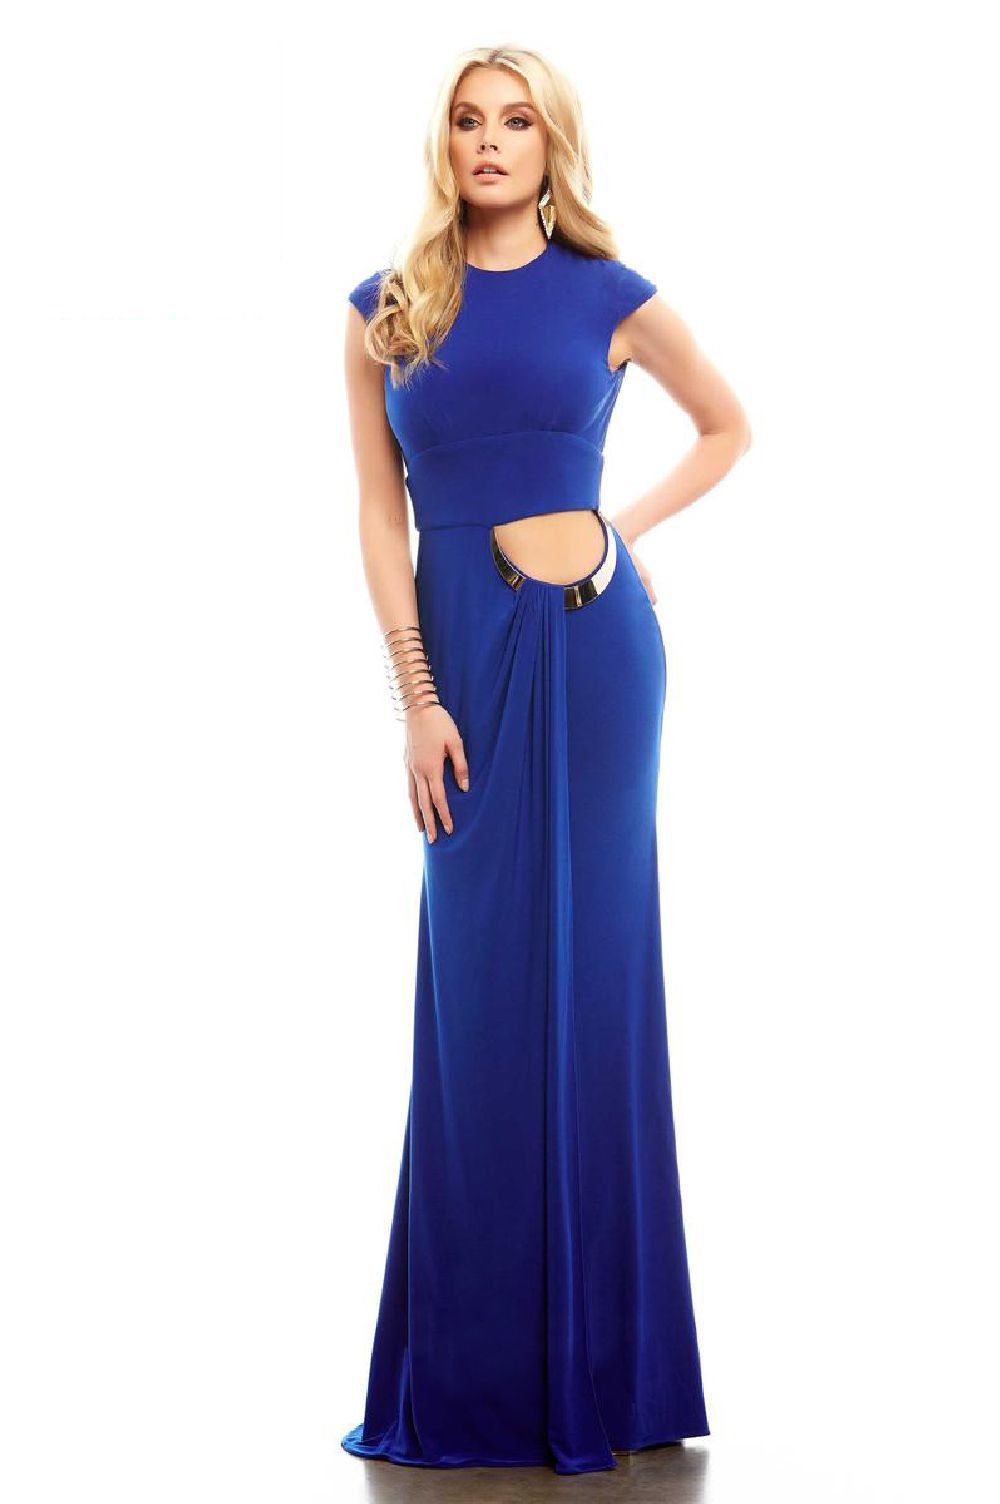 Cassandra Stone 485 Синее платье длинное, спина открыта с вырезом на поясе